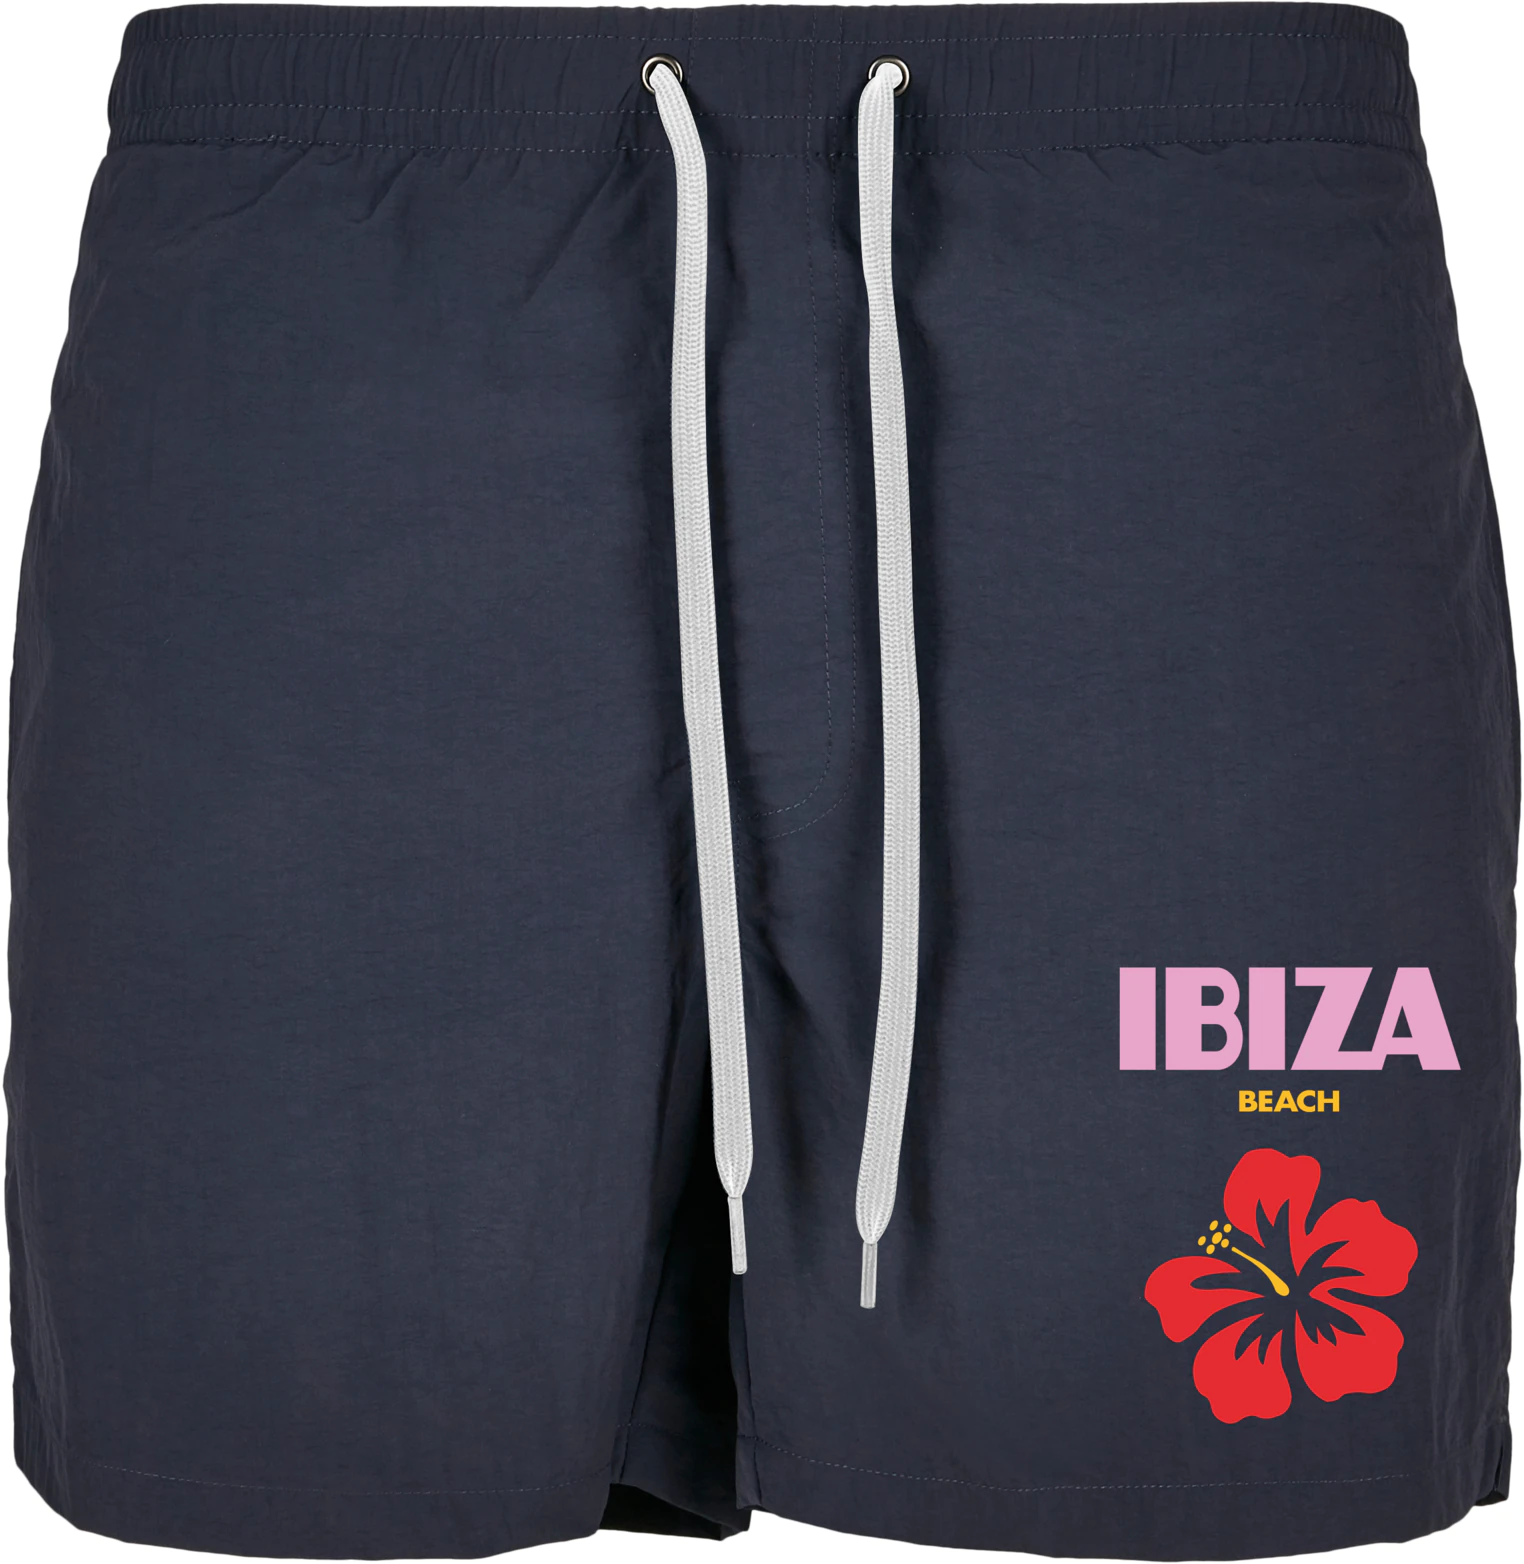 Пляжные купальники MT Ibiza — 19695